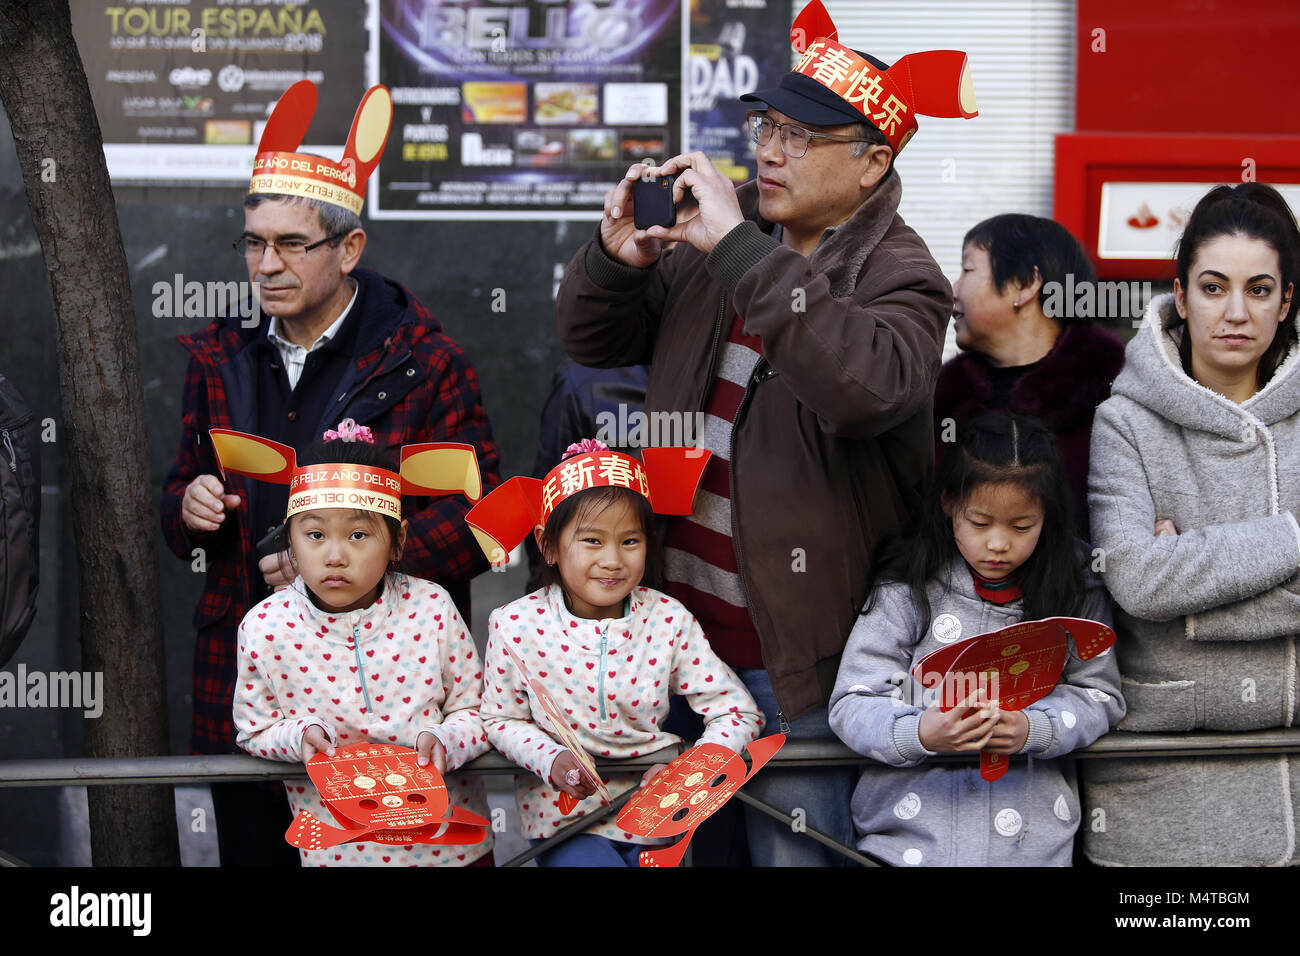 Solicitante Nueva llegada Personas con discapacidad auditiva Madrid, Madrid, España. 18 Feb, 2018. Visto mujeres vistiendo ropa  tradicional chino durante el desfile del año nuevo chino.mil de los  participantes toman parte en el desfile del Año Nuevo Chino en